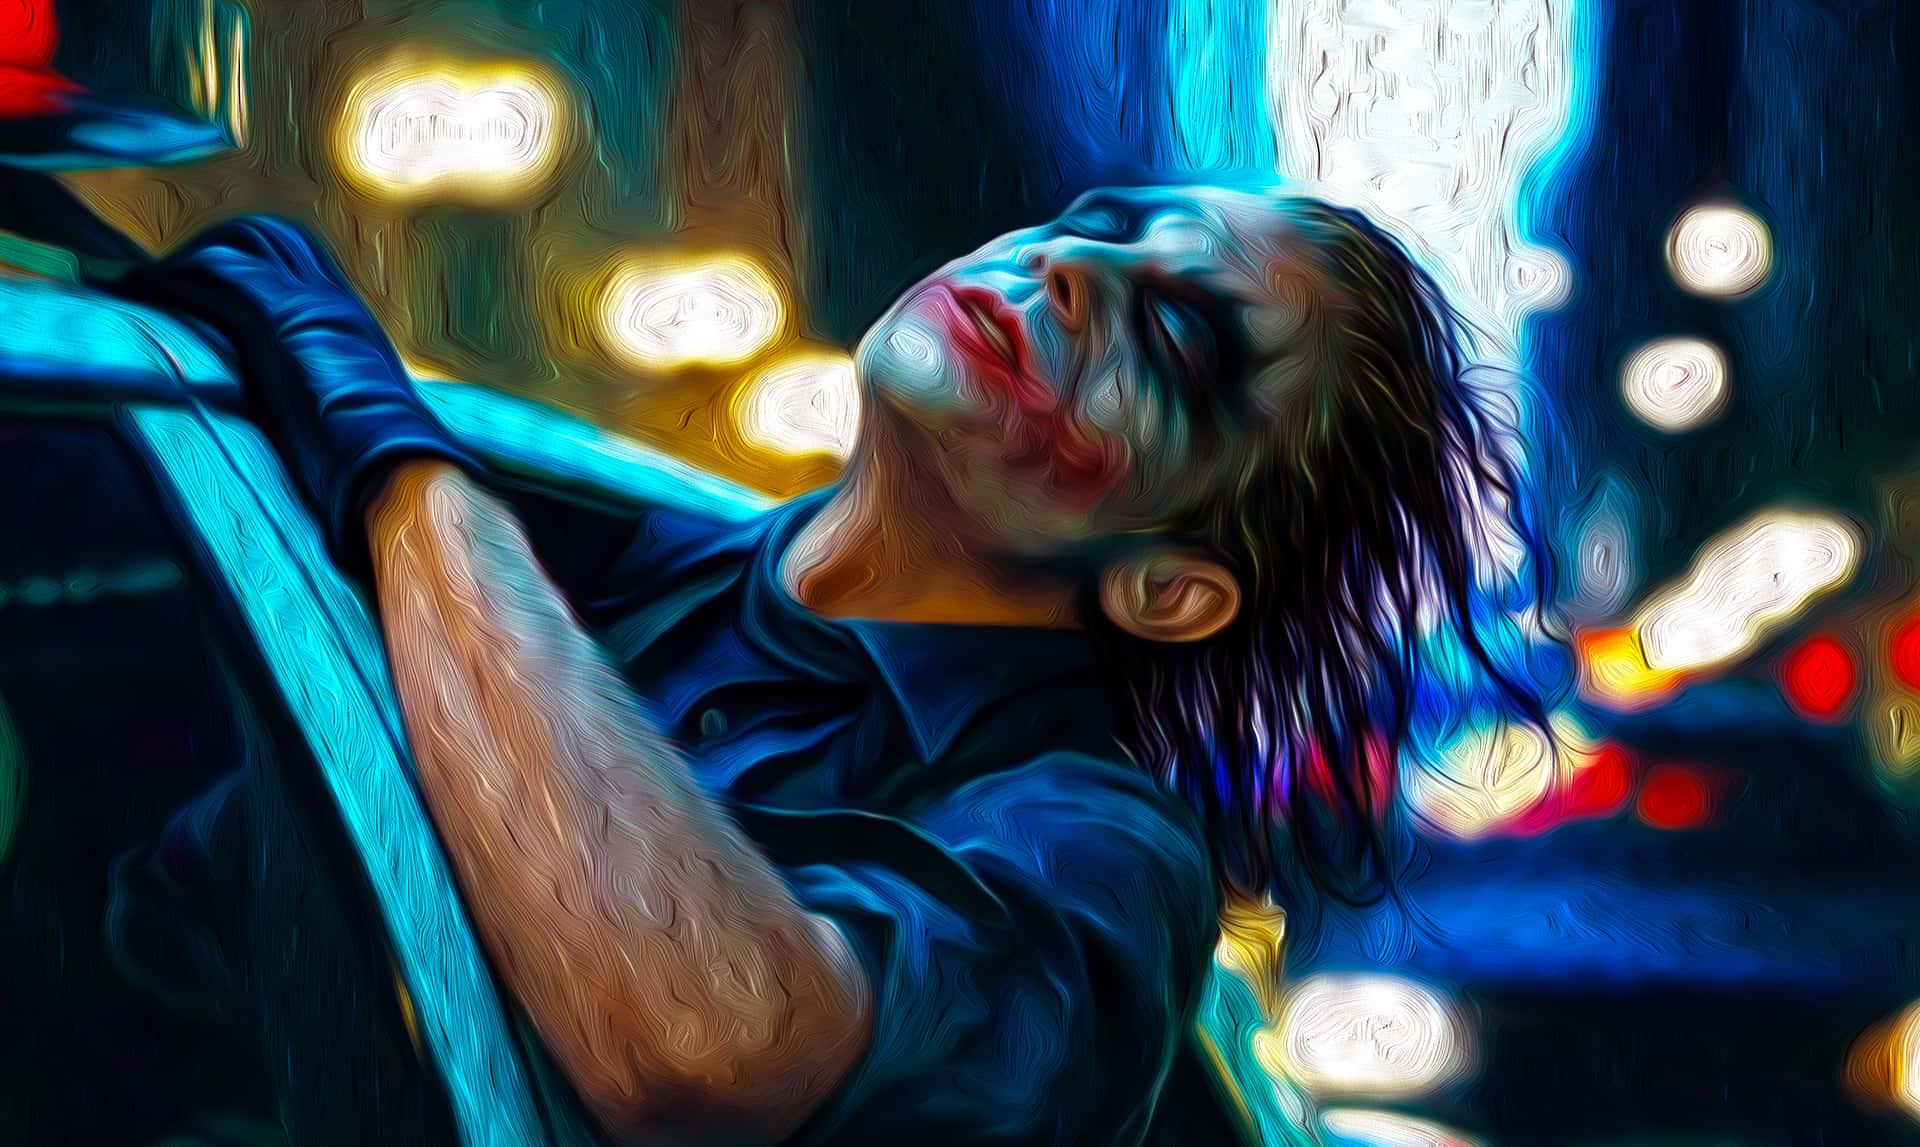 The Joker Painting - Joker Painting Fine Art Print Background